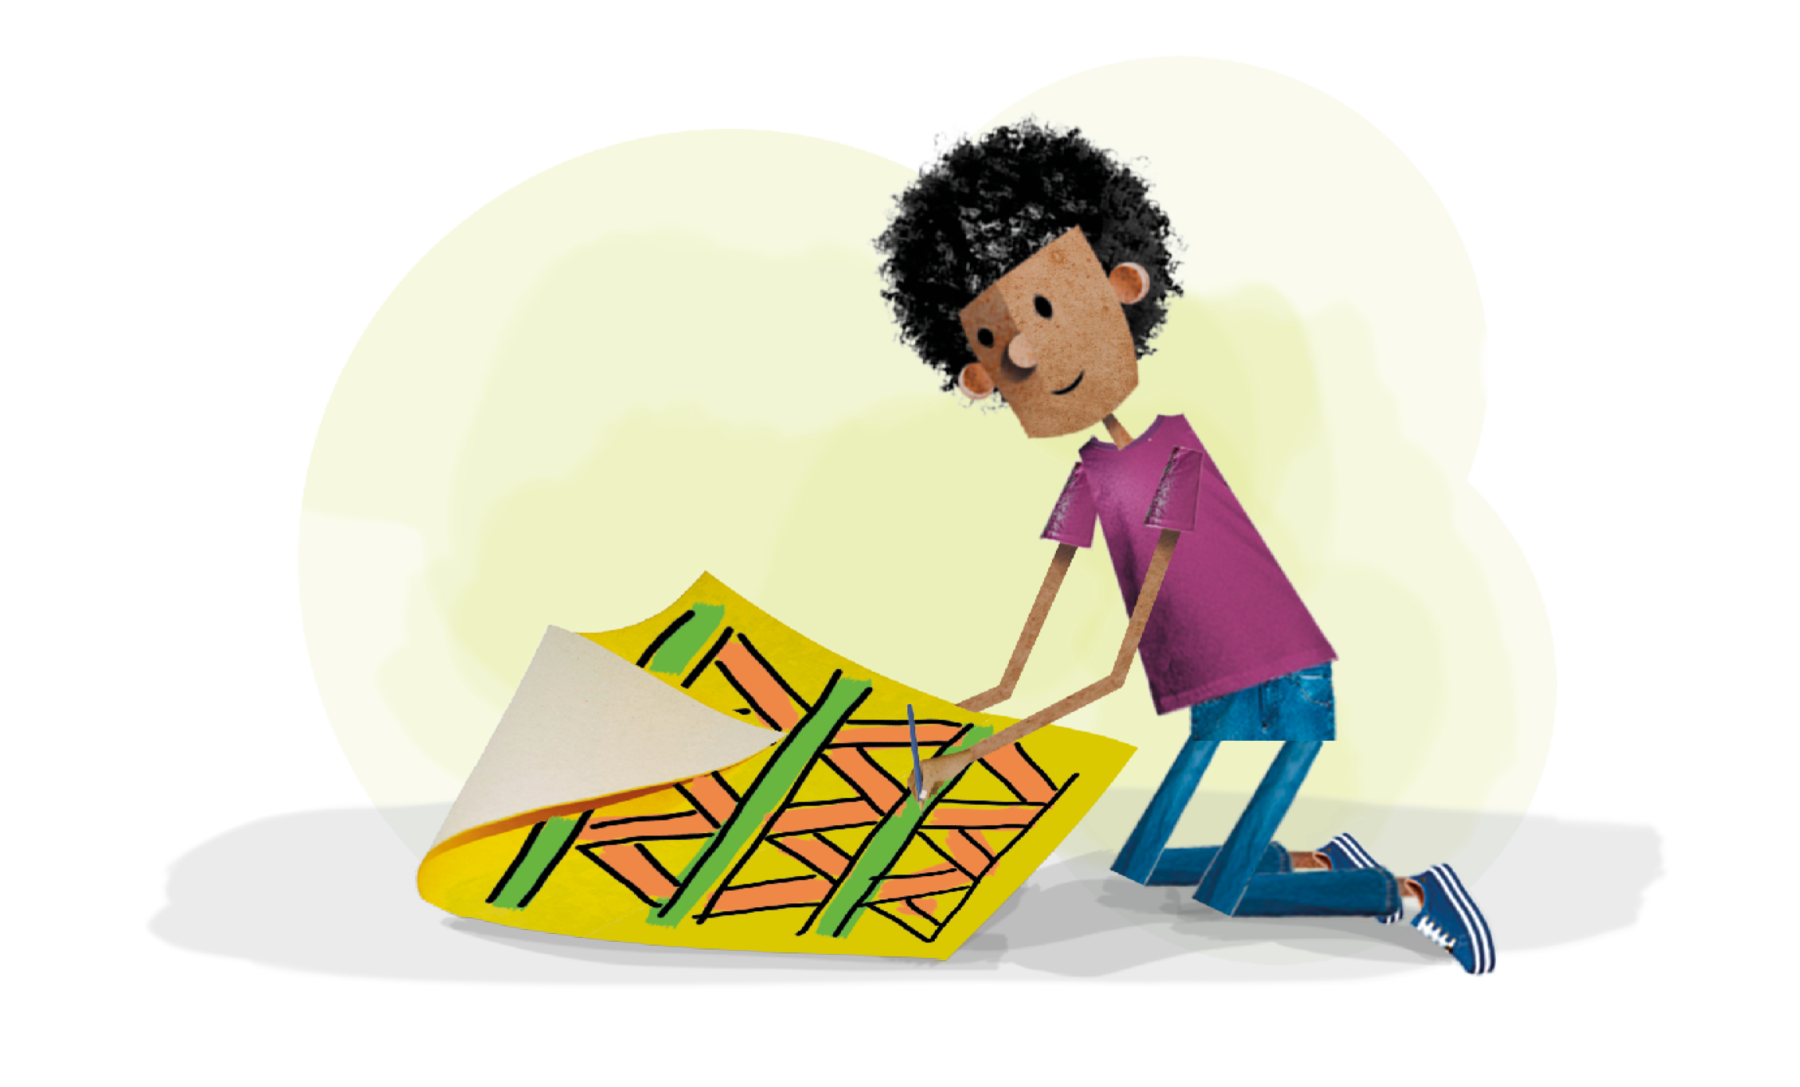 Ilustração. Um menino de cabelo encaracolado, usando camiseta roxa, calça jeans, está de joelhos no chão, pintando o desenho da cartolina: triângulos em laranja e as linhas retas de verde.